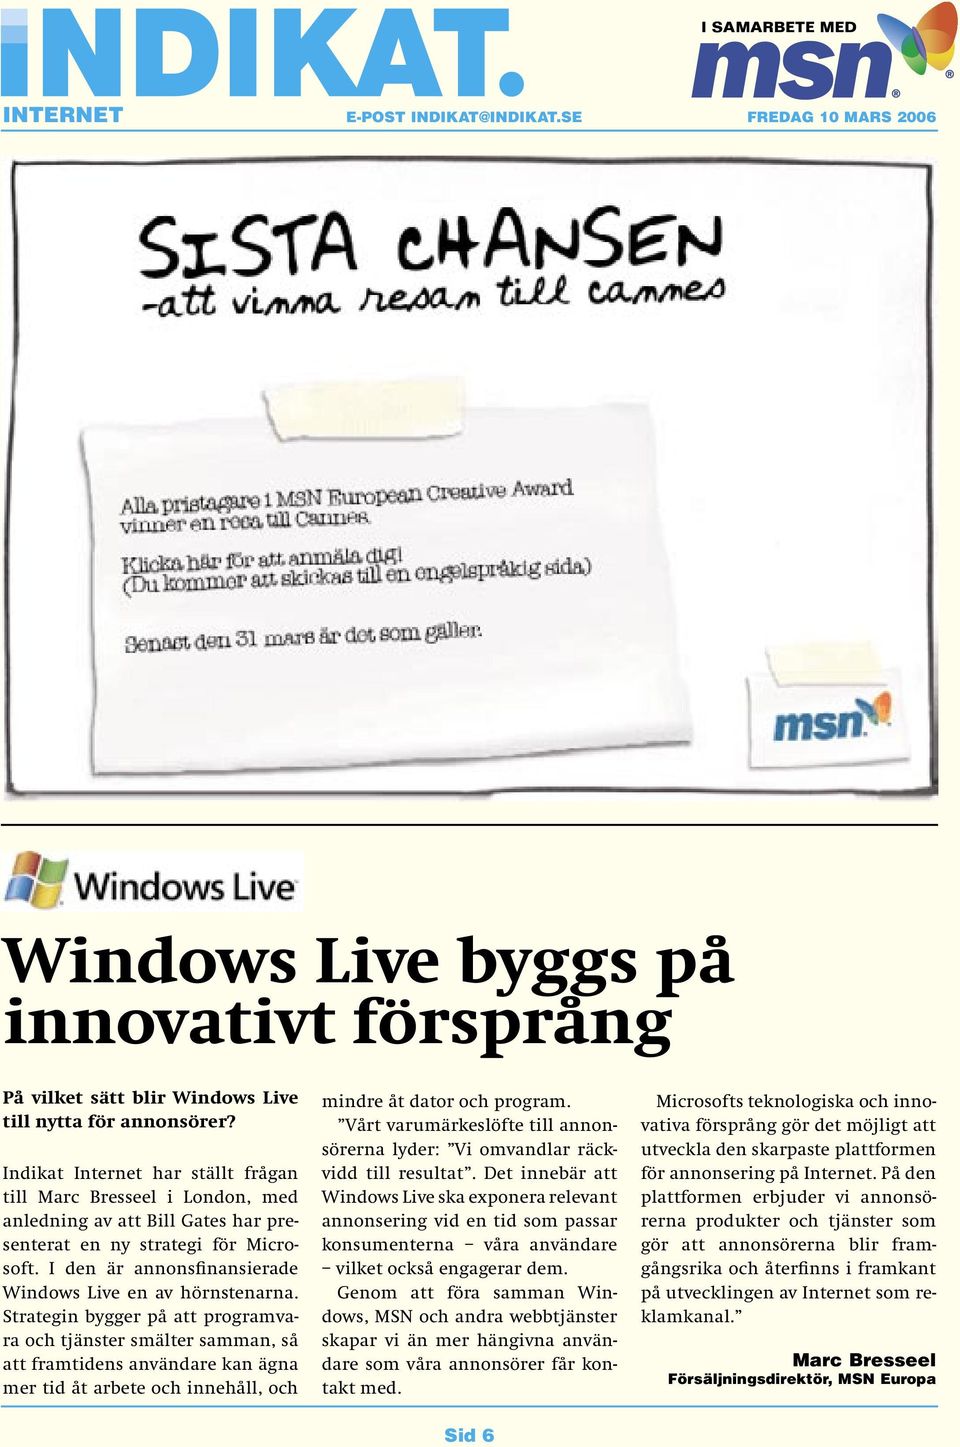 I den är annonsfinansierade Windows Live en av hörnstenarna.